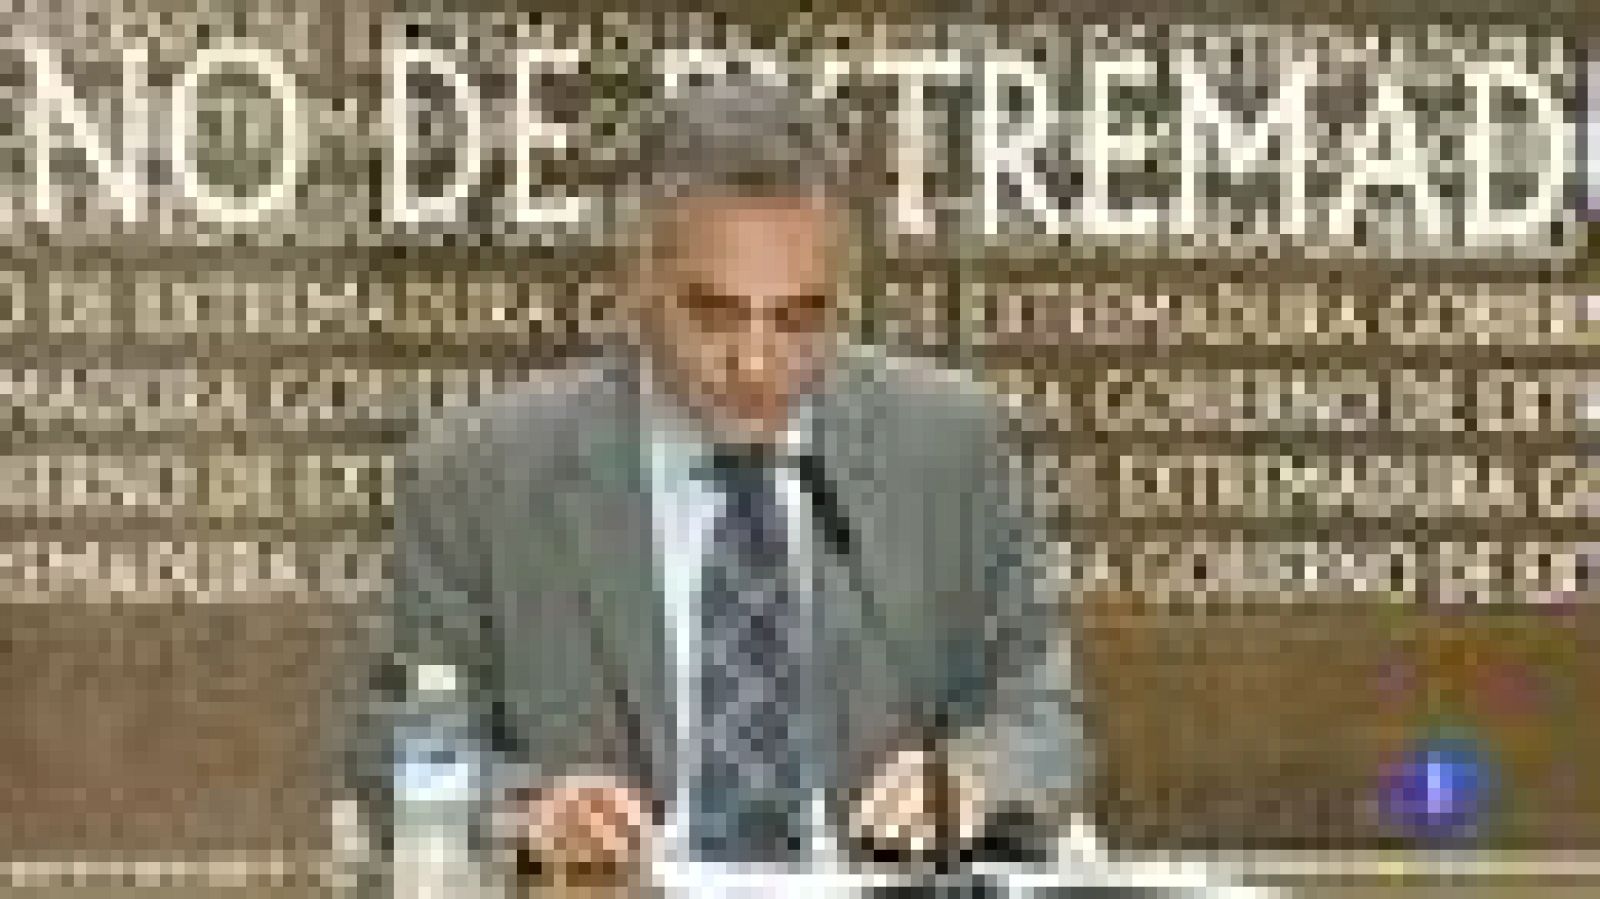 El consejero de sanidad de Extremadura presenta su dimisión